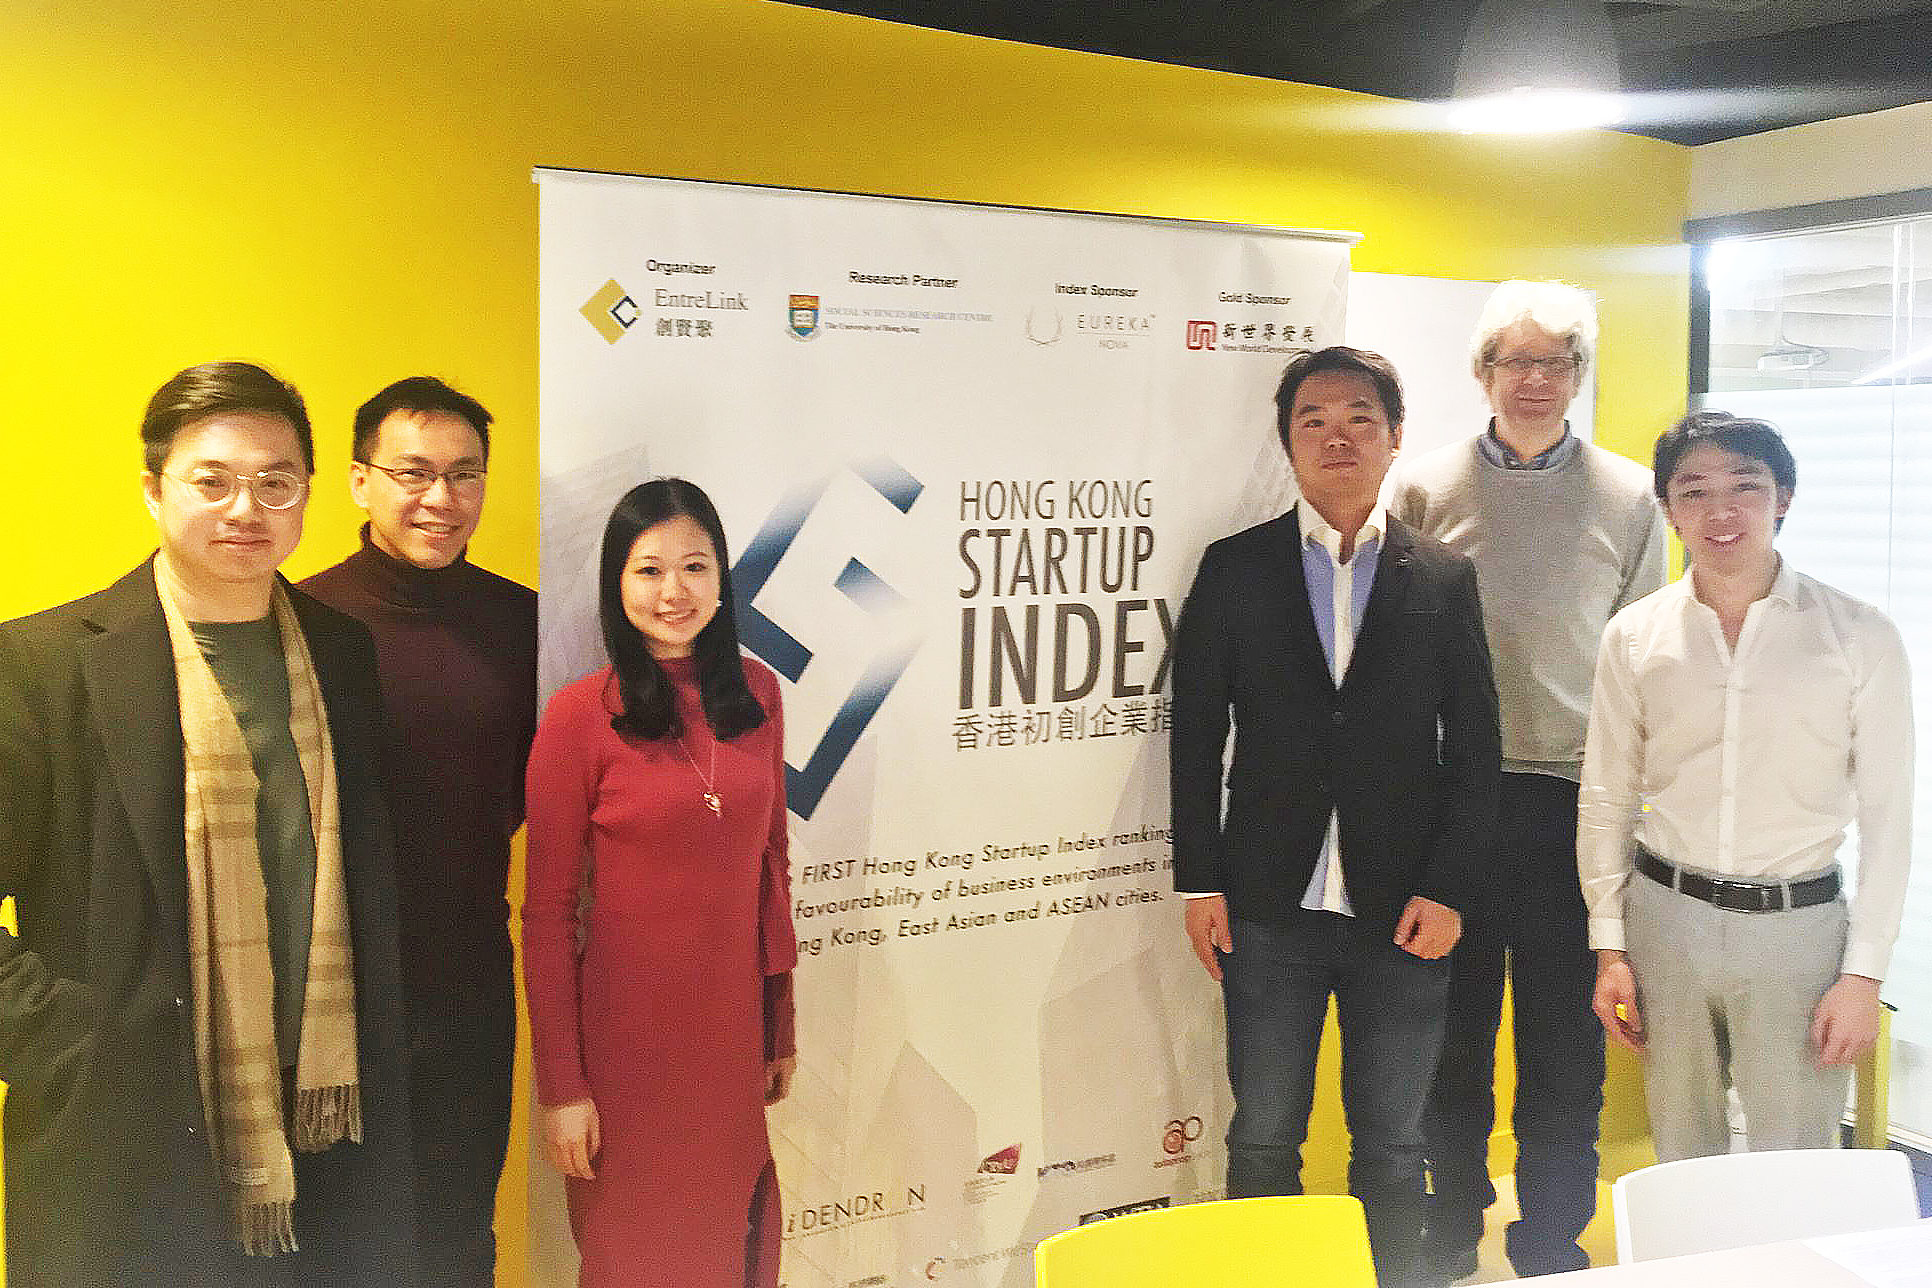 「創賢聚」夥拍香港大學社會科學研究中心發表全港首個《香港初創企業指數》。